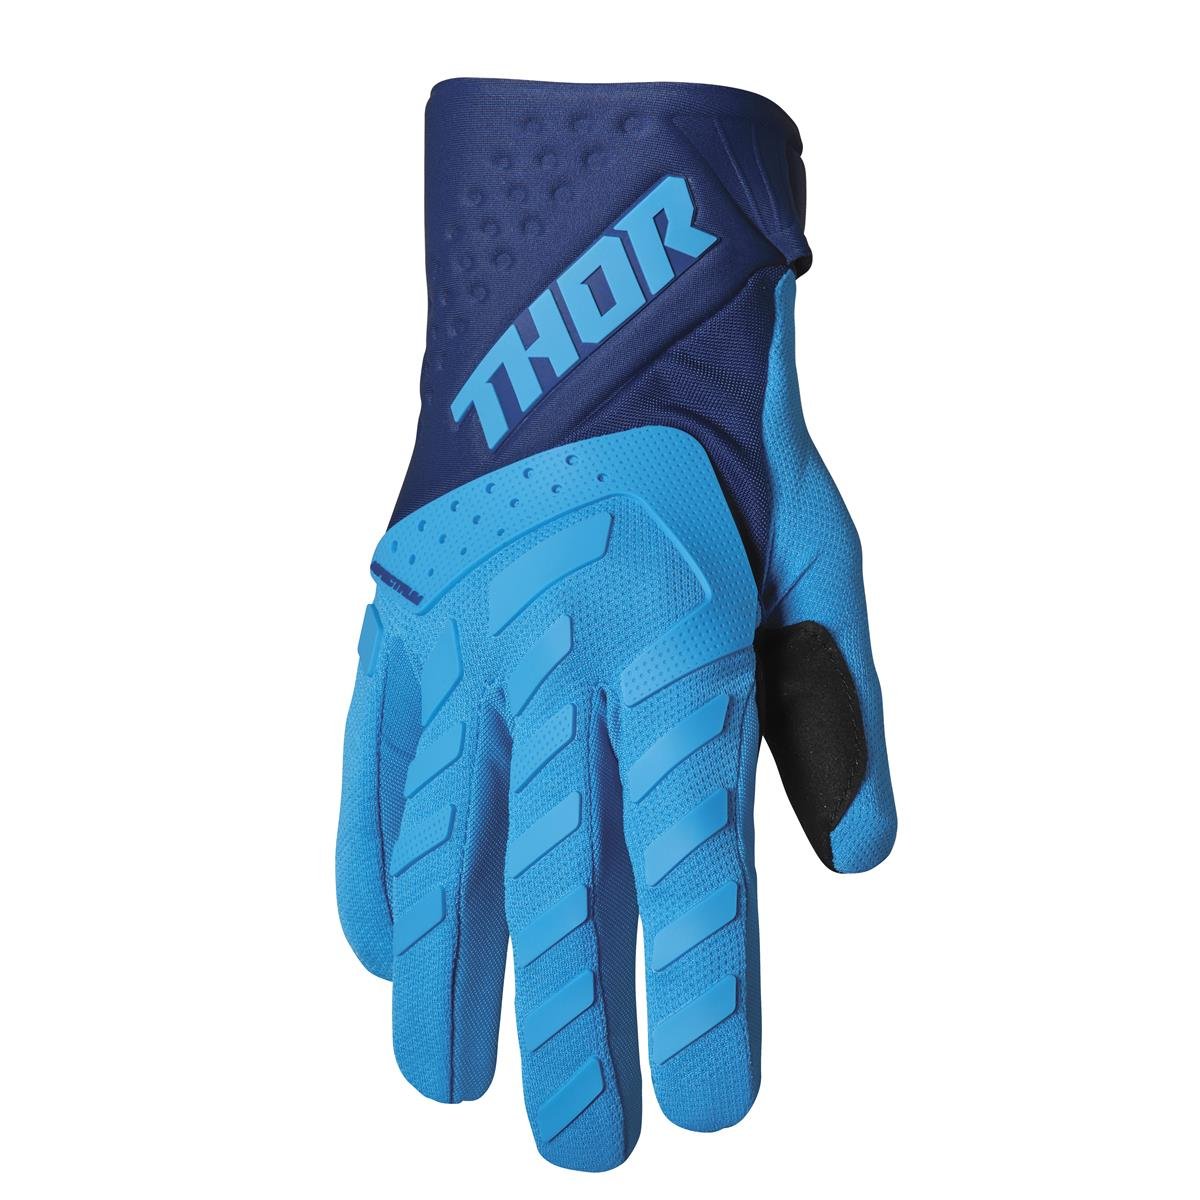 Thor Gloves Spectrum Blue/Navy